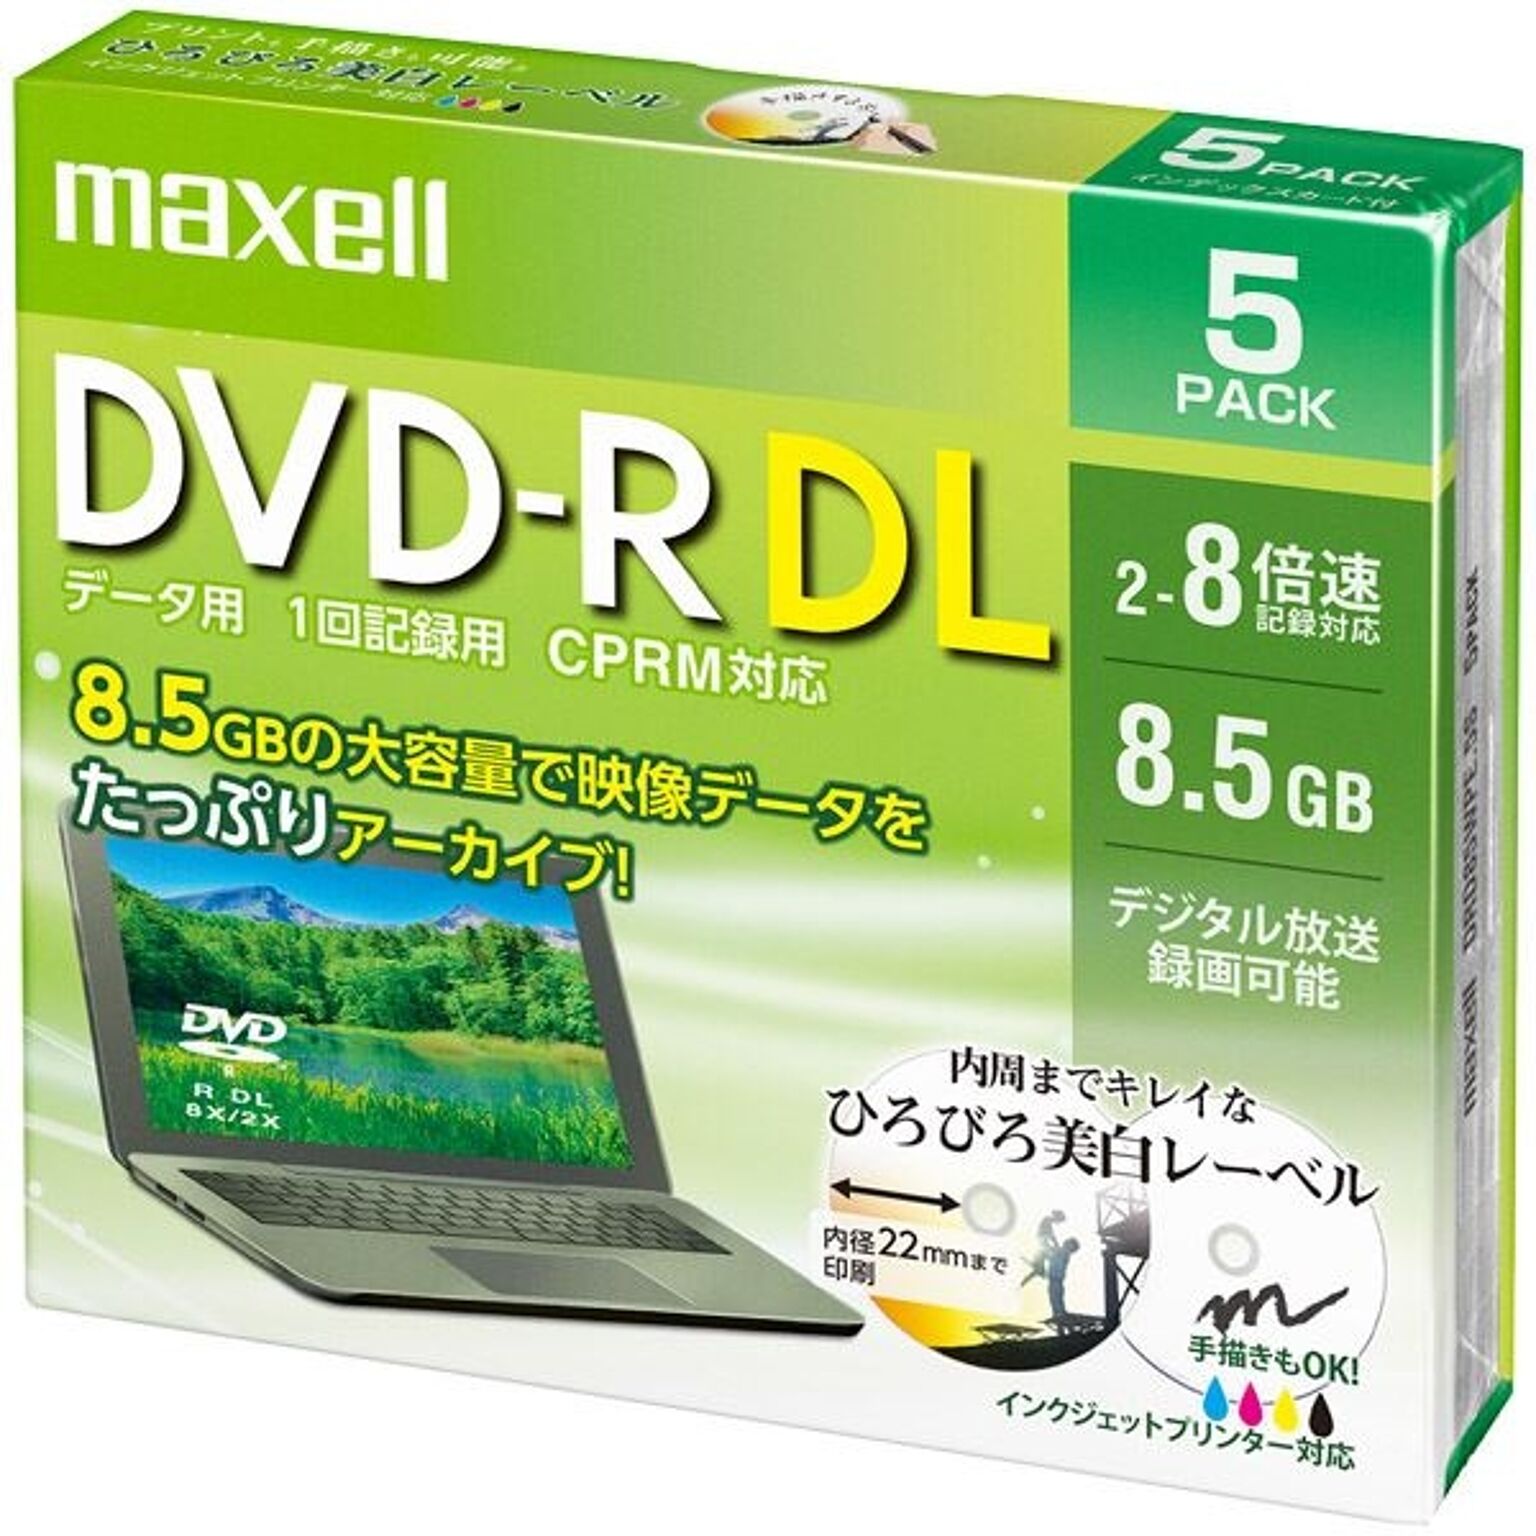 Maxell データ用 DVD-R DL 8.5GB 8倍速 プリンタブルホワイト 5枚パック1枚ずつプラケース DRD85WPE.5S